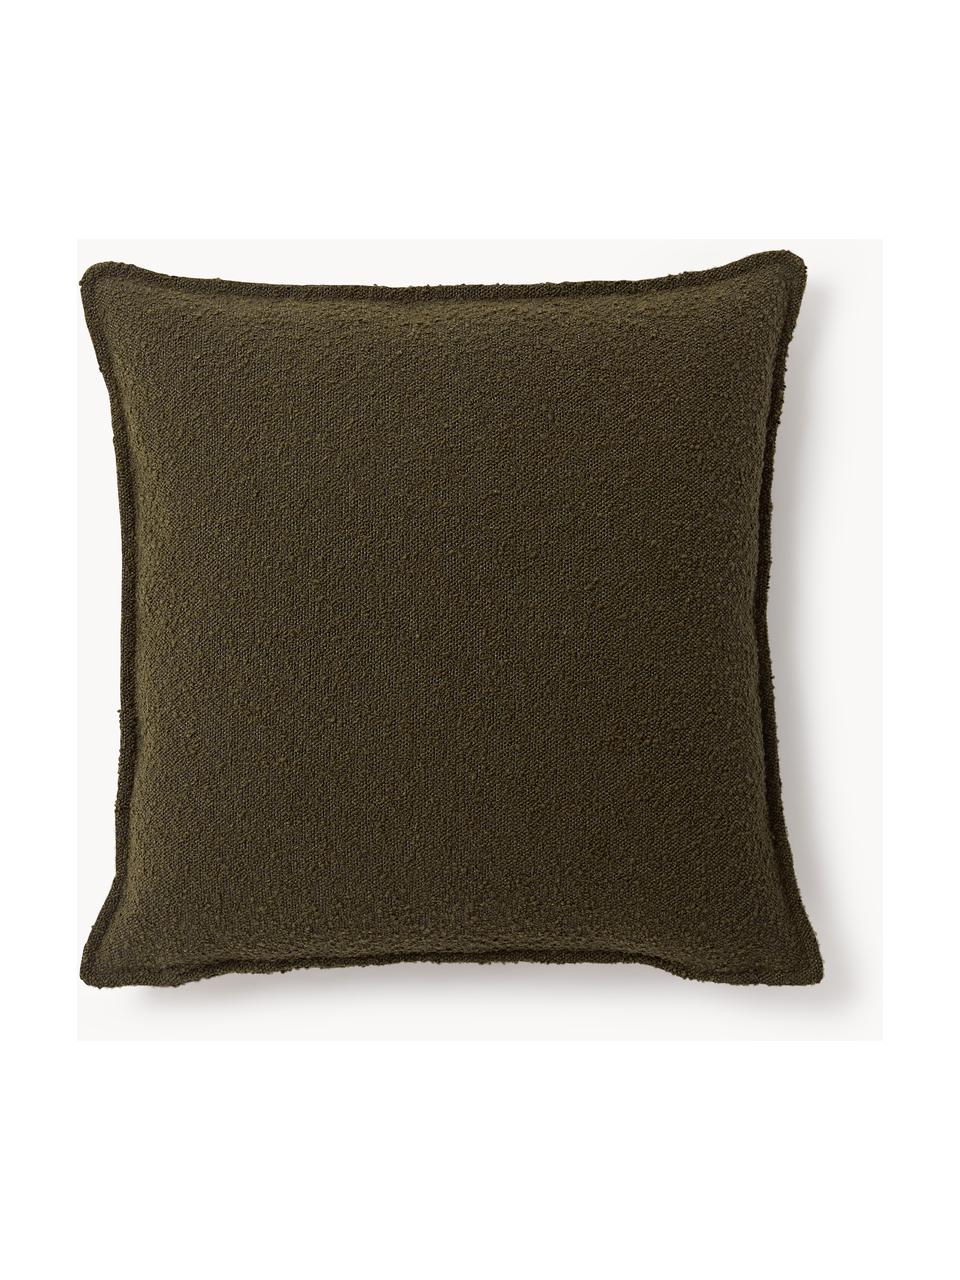 Coussin canapé en tissu bouclé Lennon, Bouclé vert olive, larg. 70 x long. 70 cm